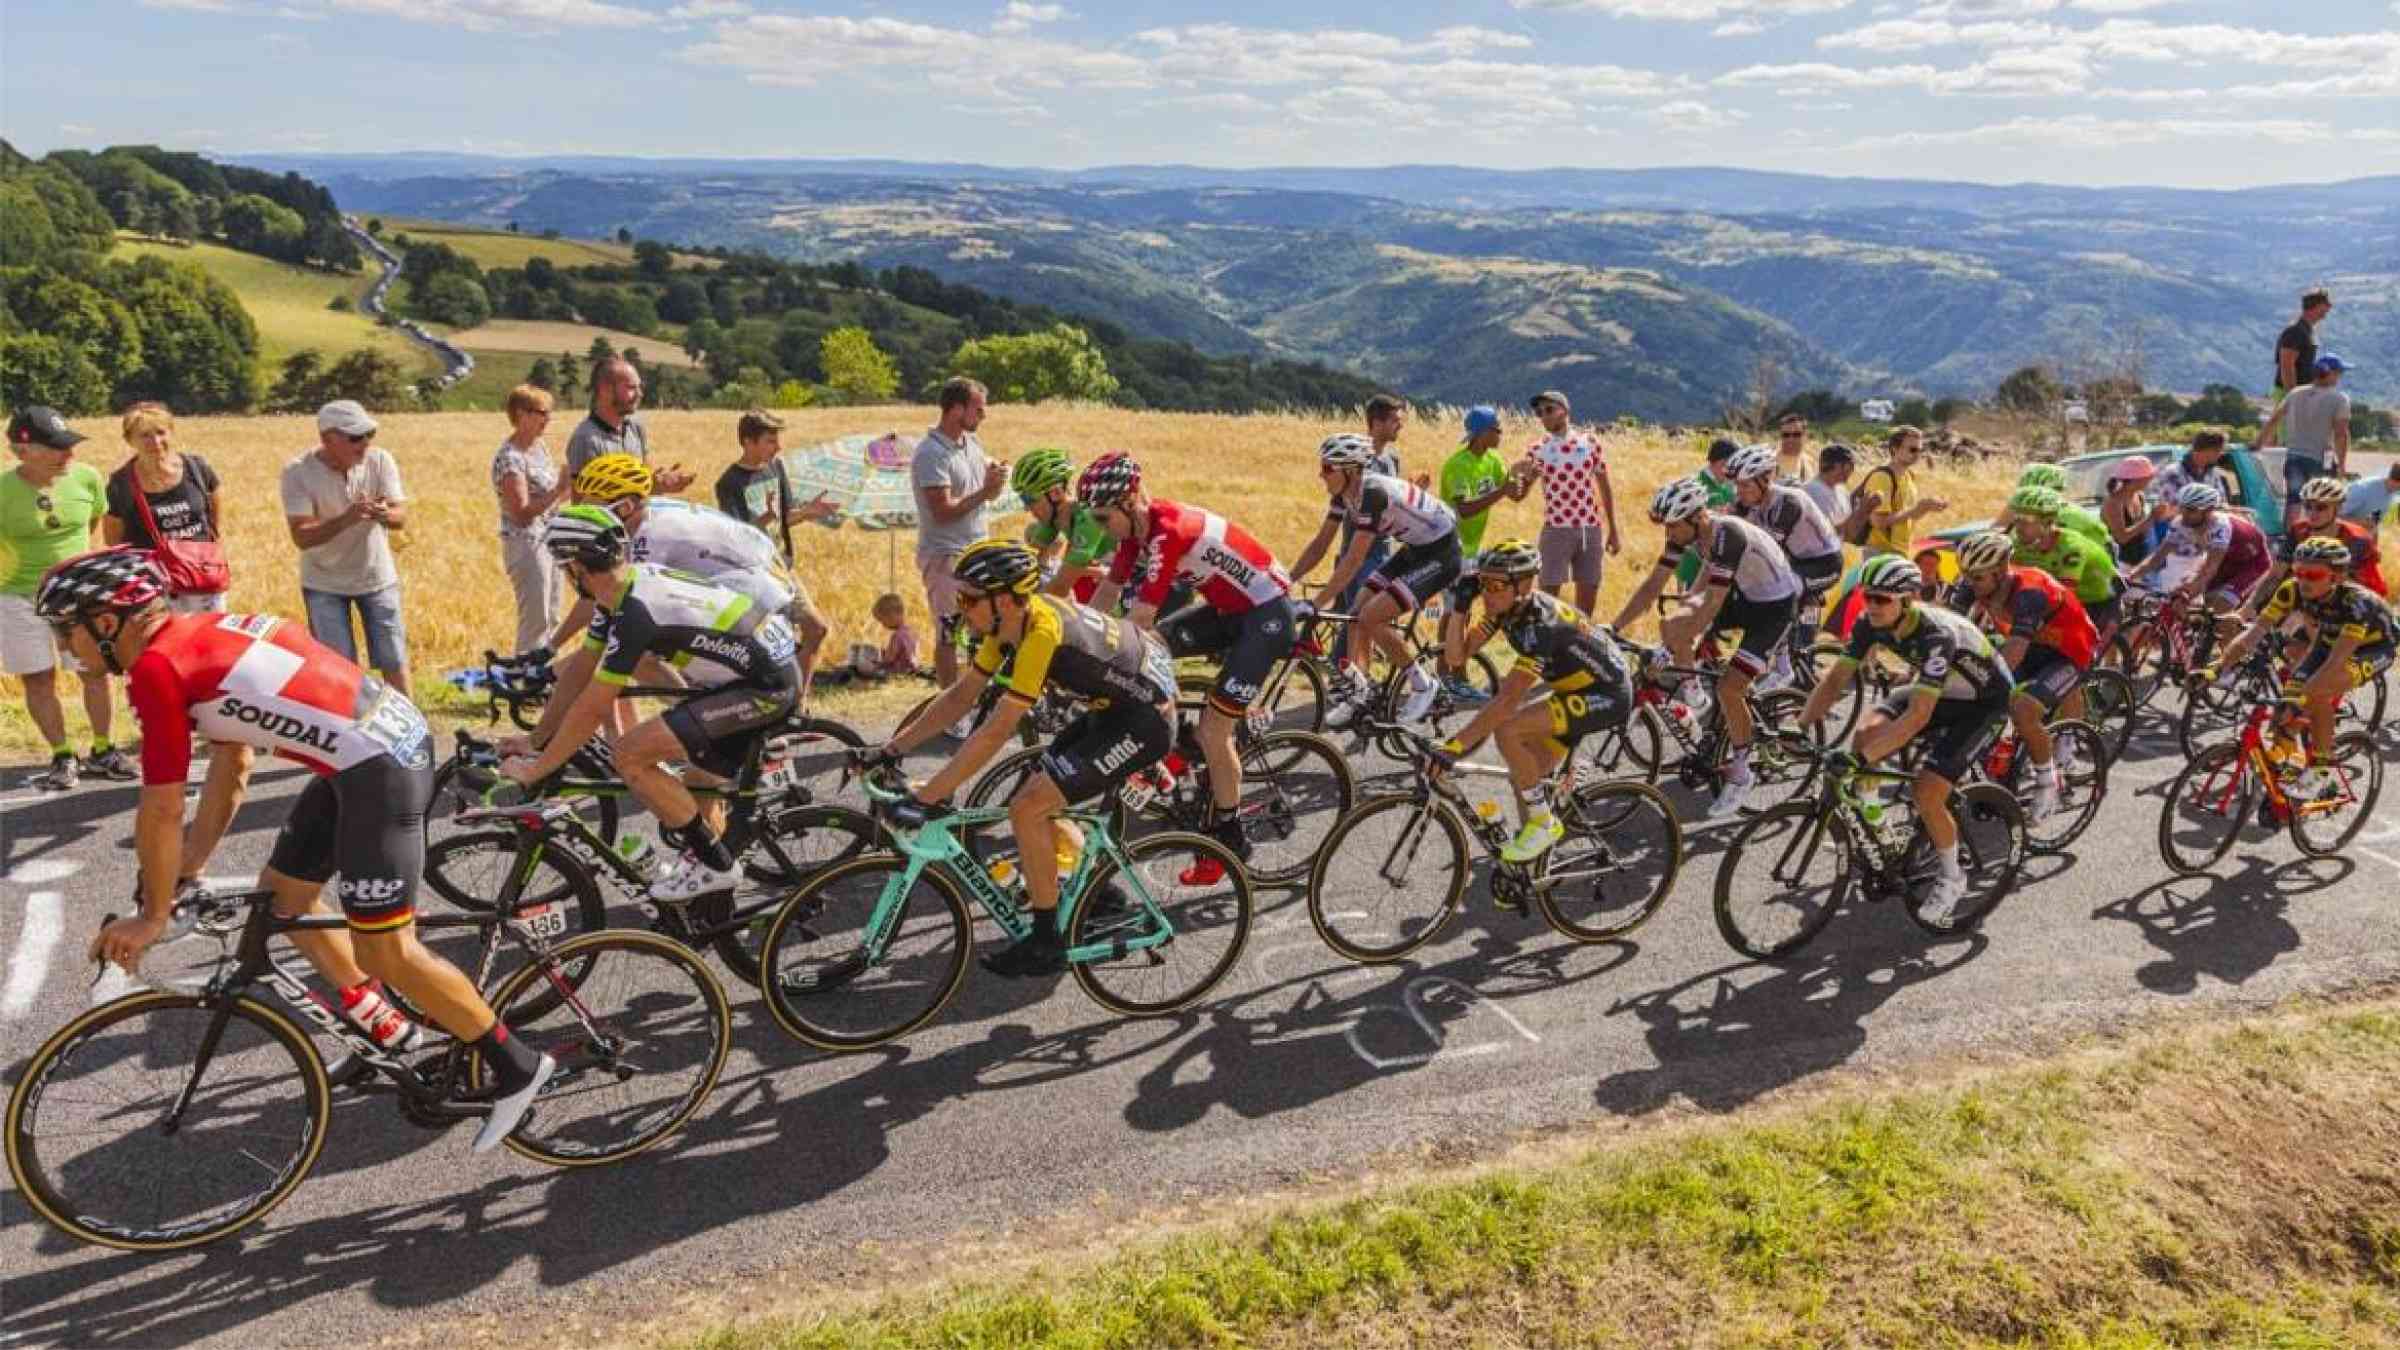 A group of Tour de France cyclists battling